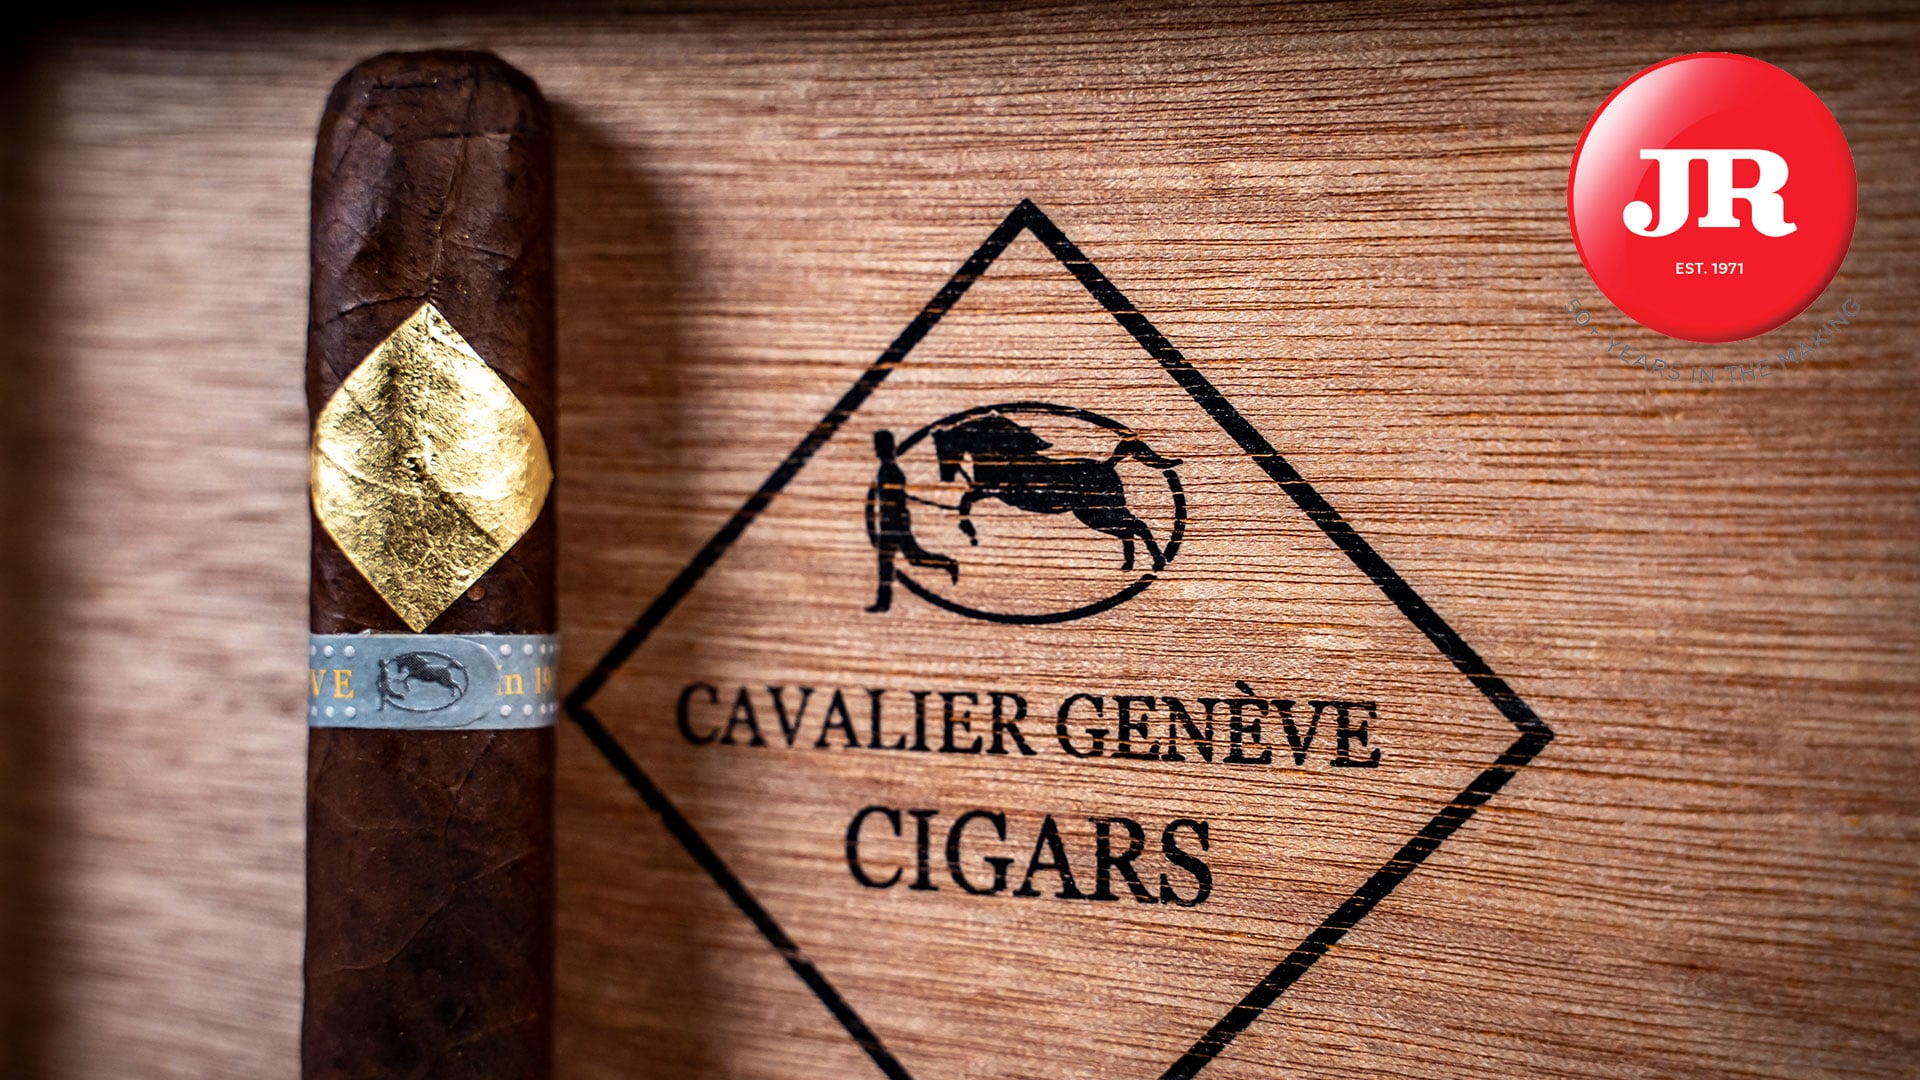 Cavalier BII Viso Jalapa Cigar Review on Vimeo